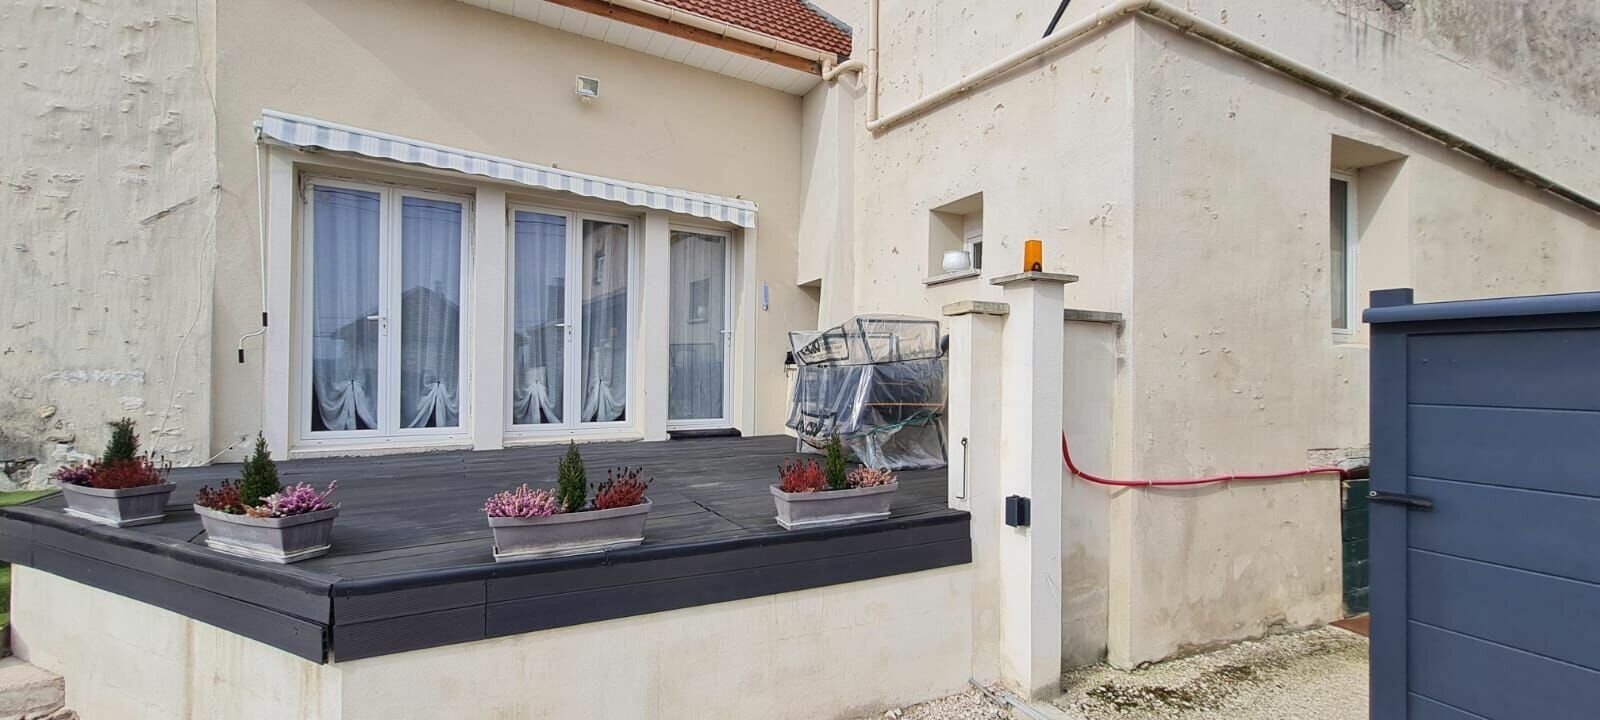 Maison à vendre 2 105m2 à Saâcy-sur-Marne vignette-2